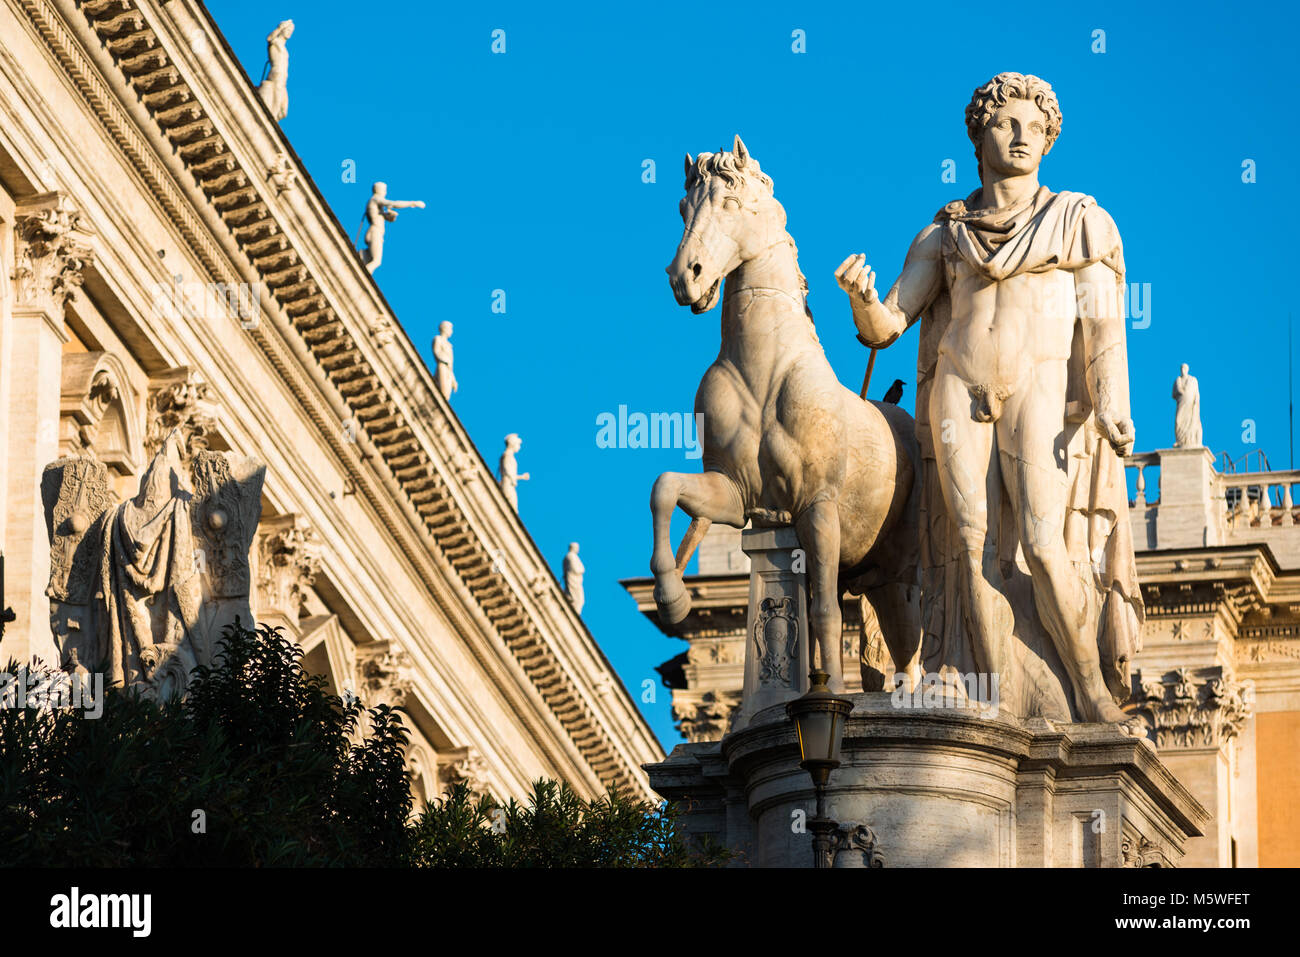 Einer der beiden dioskuren (Zwillinge Zwillinge - oder Castor und Pollux) Statuen auf dem Kapitol in Rom. Stockfoto